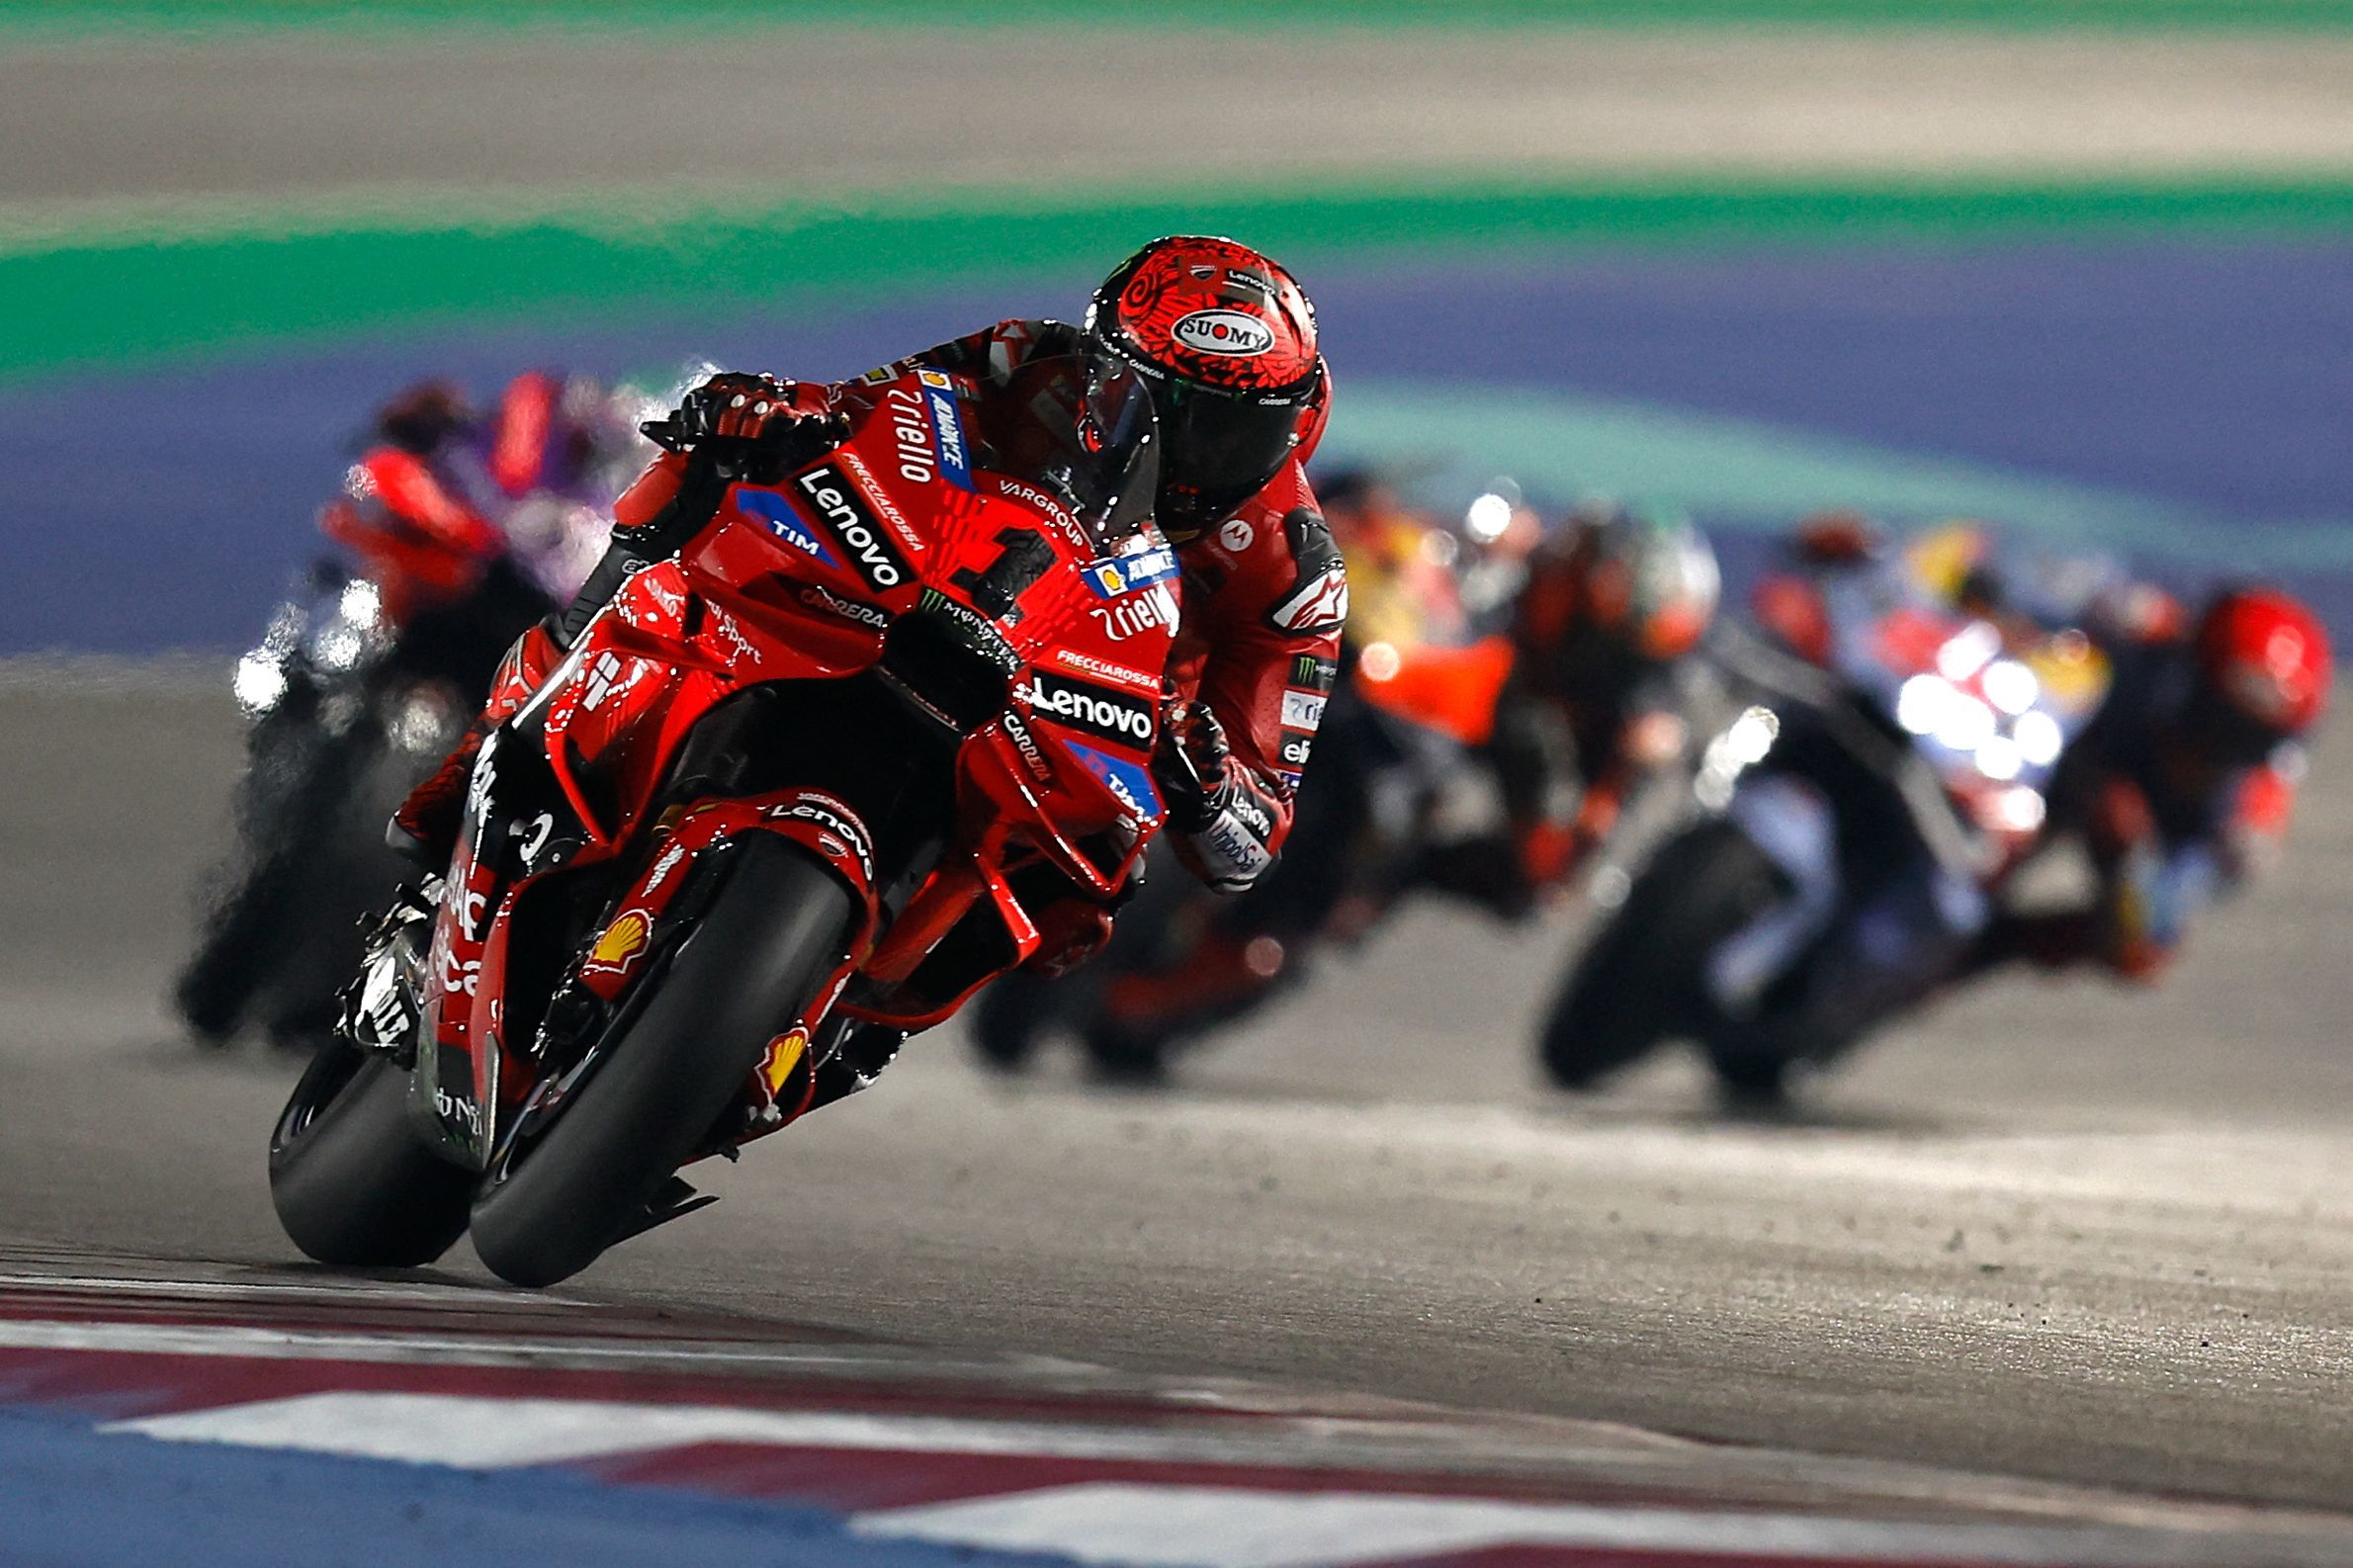 Bagnaia compitiendo con su Ducati, durante el Gran Premio de Qatar.